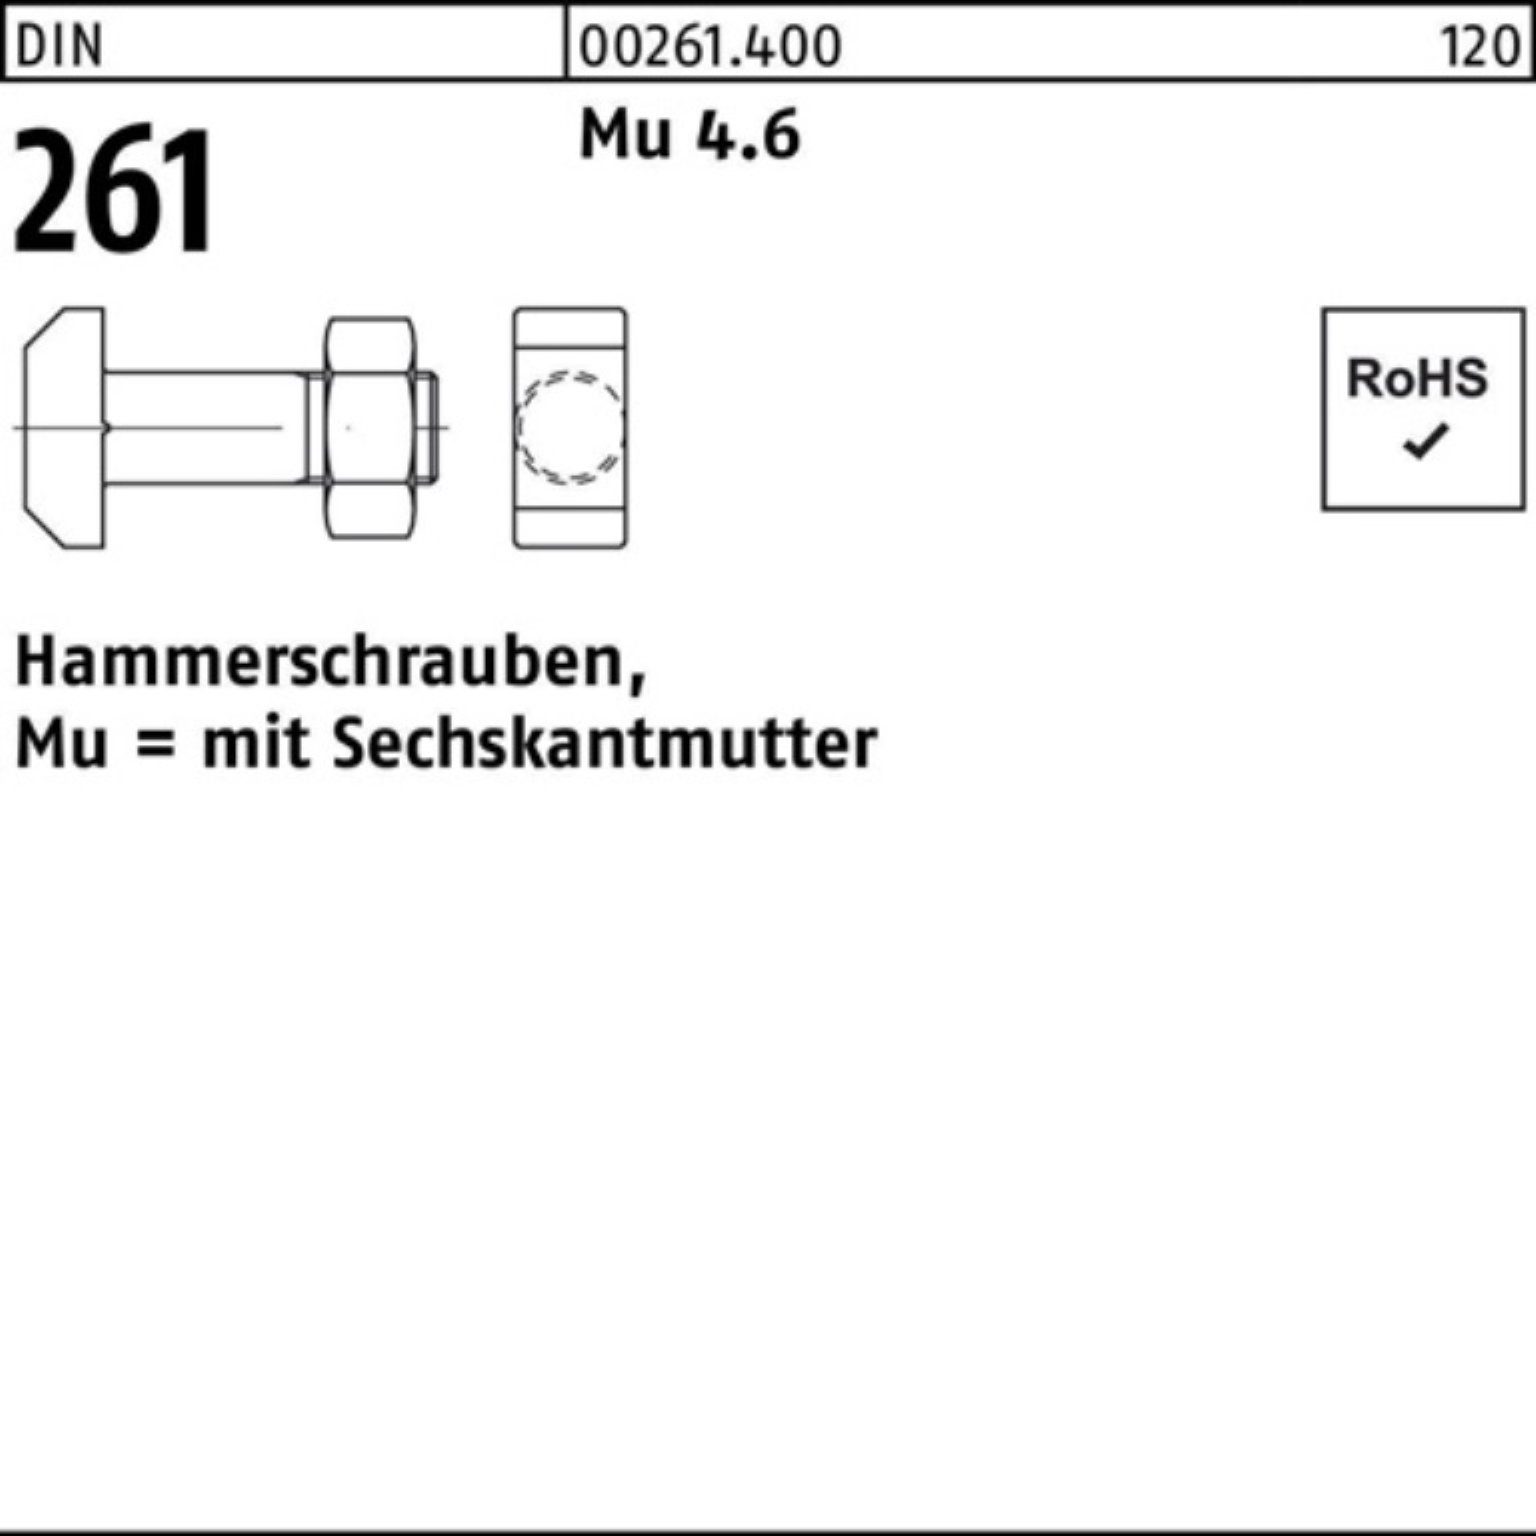 Reyher Schraube 100er 4.6 M10x DIN 261 Mu 25 Hammerschraube Sechskantmutter 50 Pack St